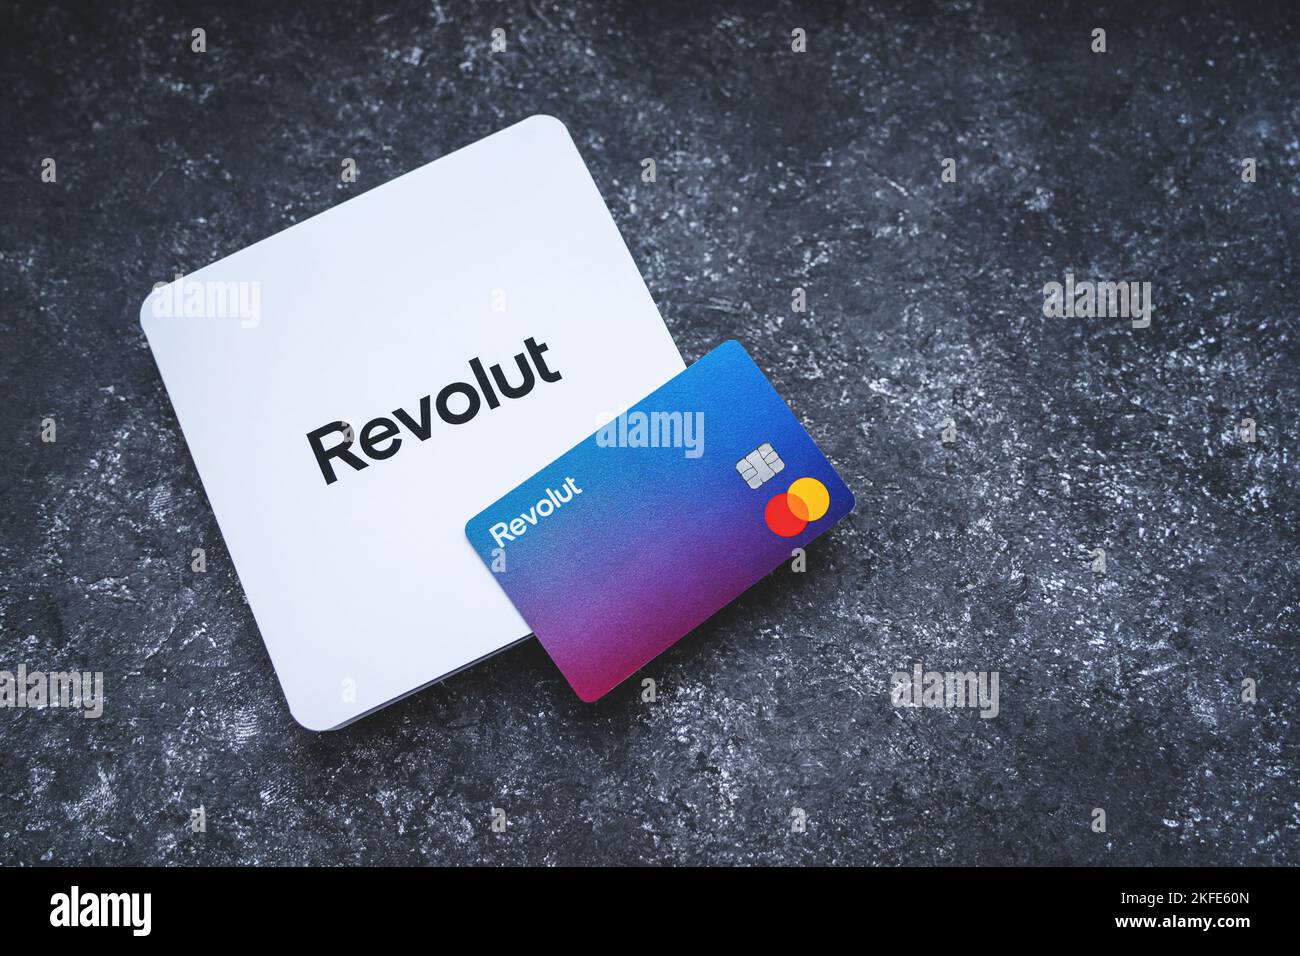 Carta Revolut Bank con busta bianca. Nuova Revolut Mastercard riprogettata senza dettagli della carta su sfondo concreto. Cracovia, Polonia - 11 novembre 2022. Foto Stock